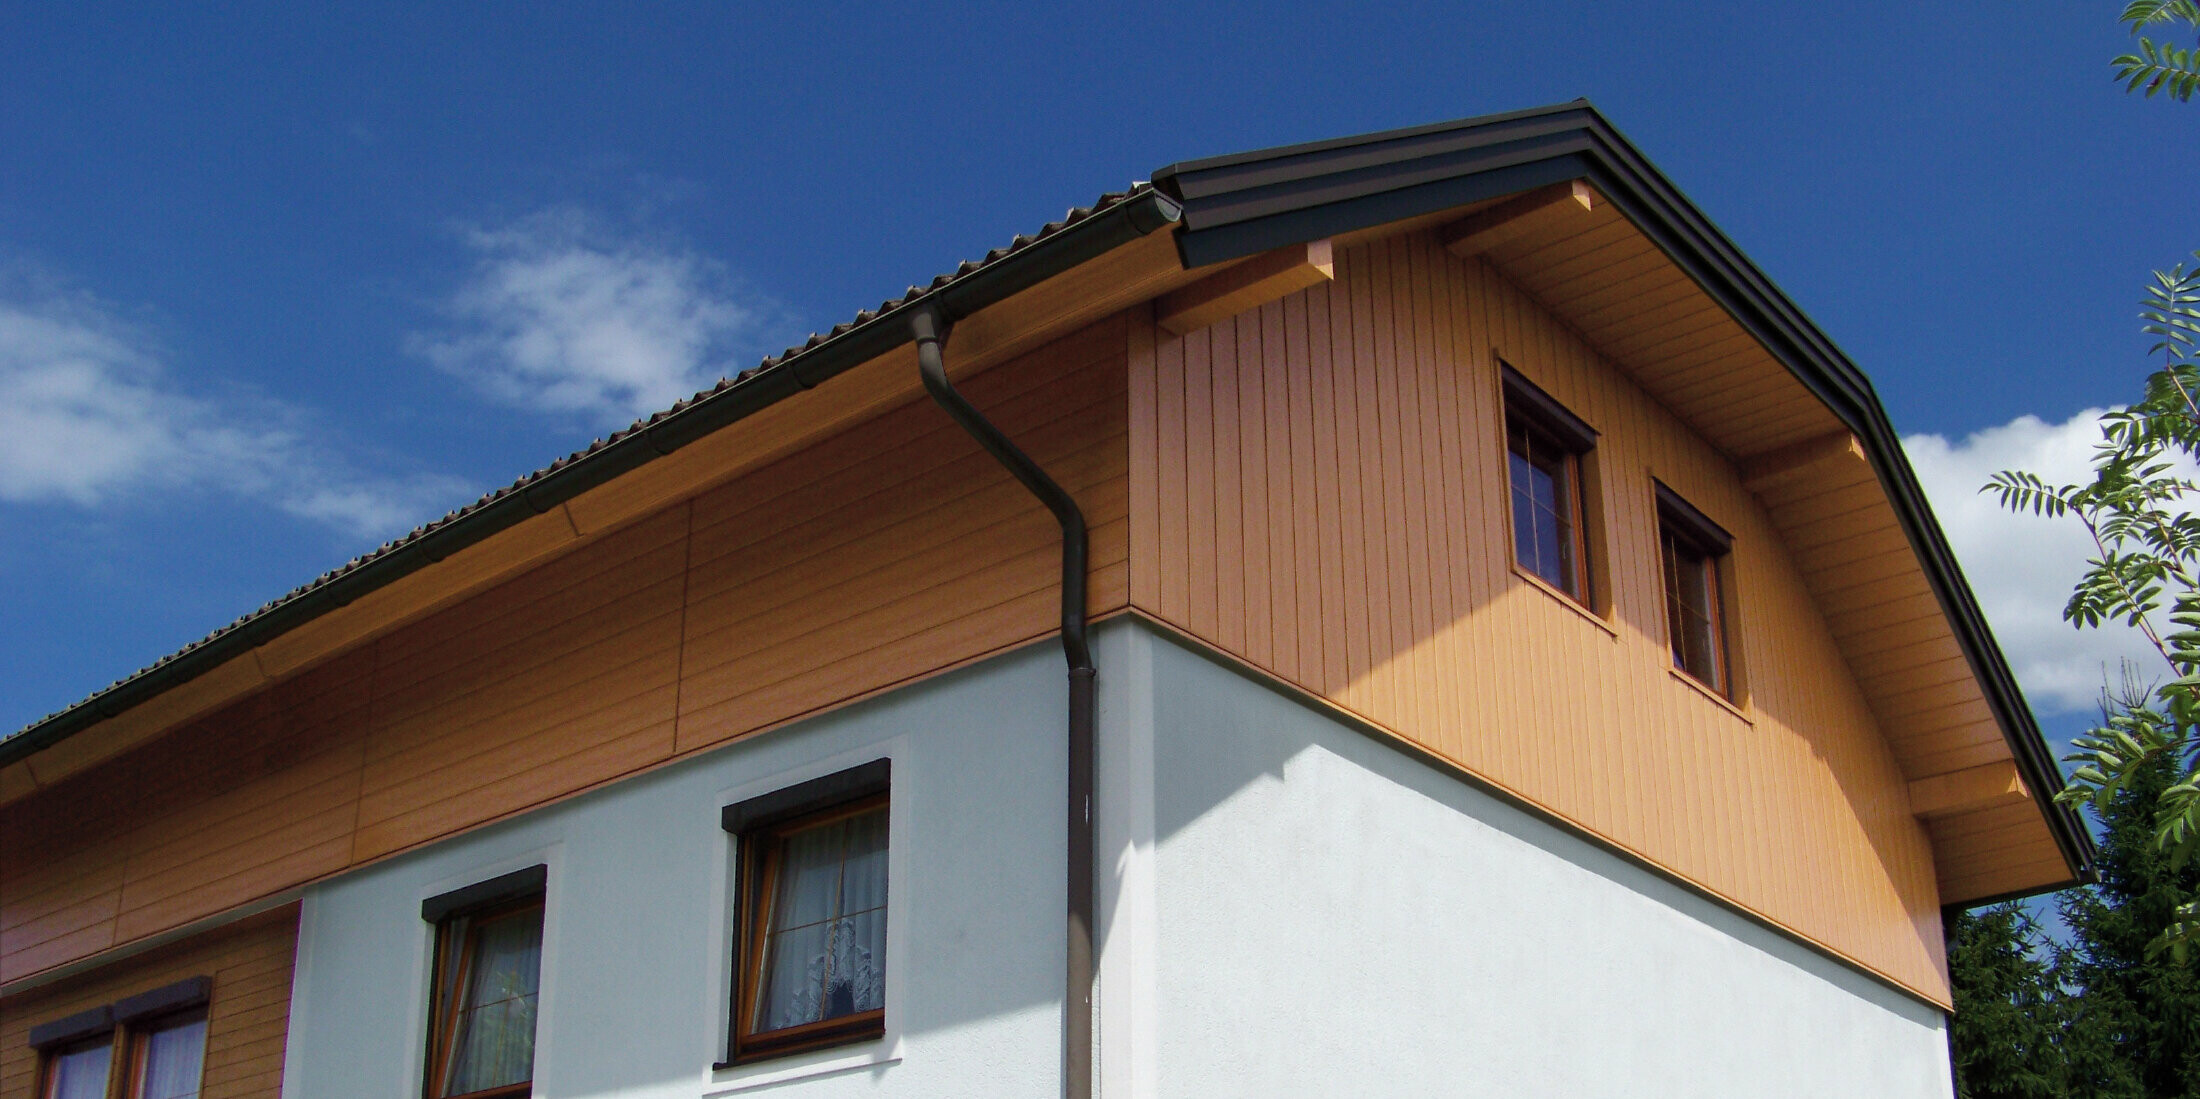 Casa unifamiliare di grandi dimensioni con tetto a due spioventi con falda a timpano e rivestimento del timpano con doghe di rivestimento PREFA con effetto legno chiaro